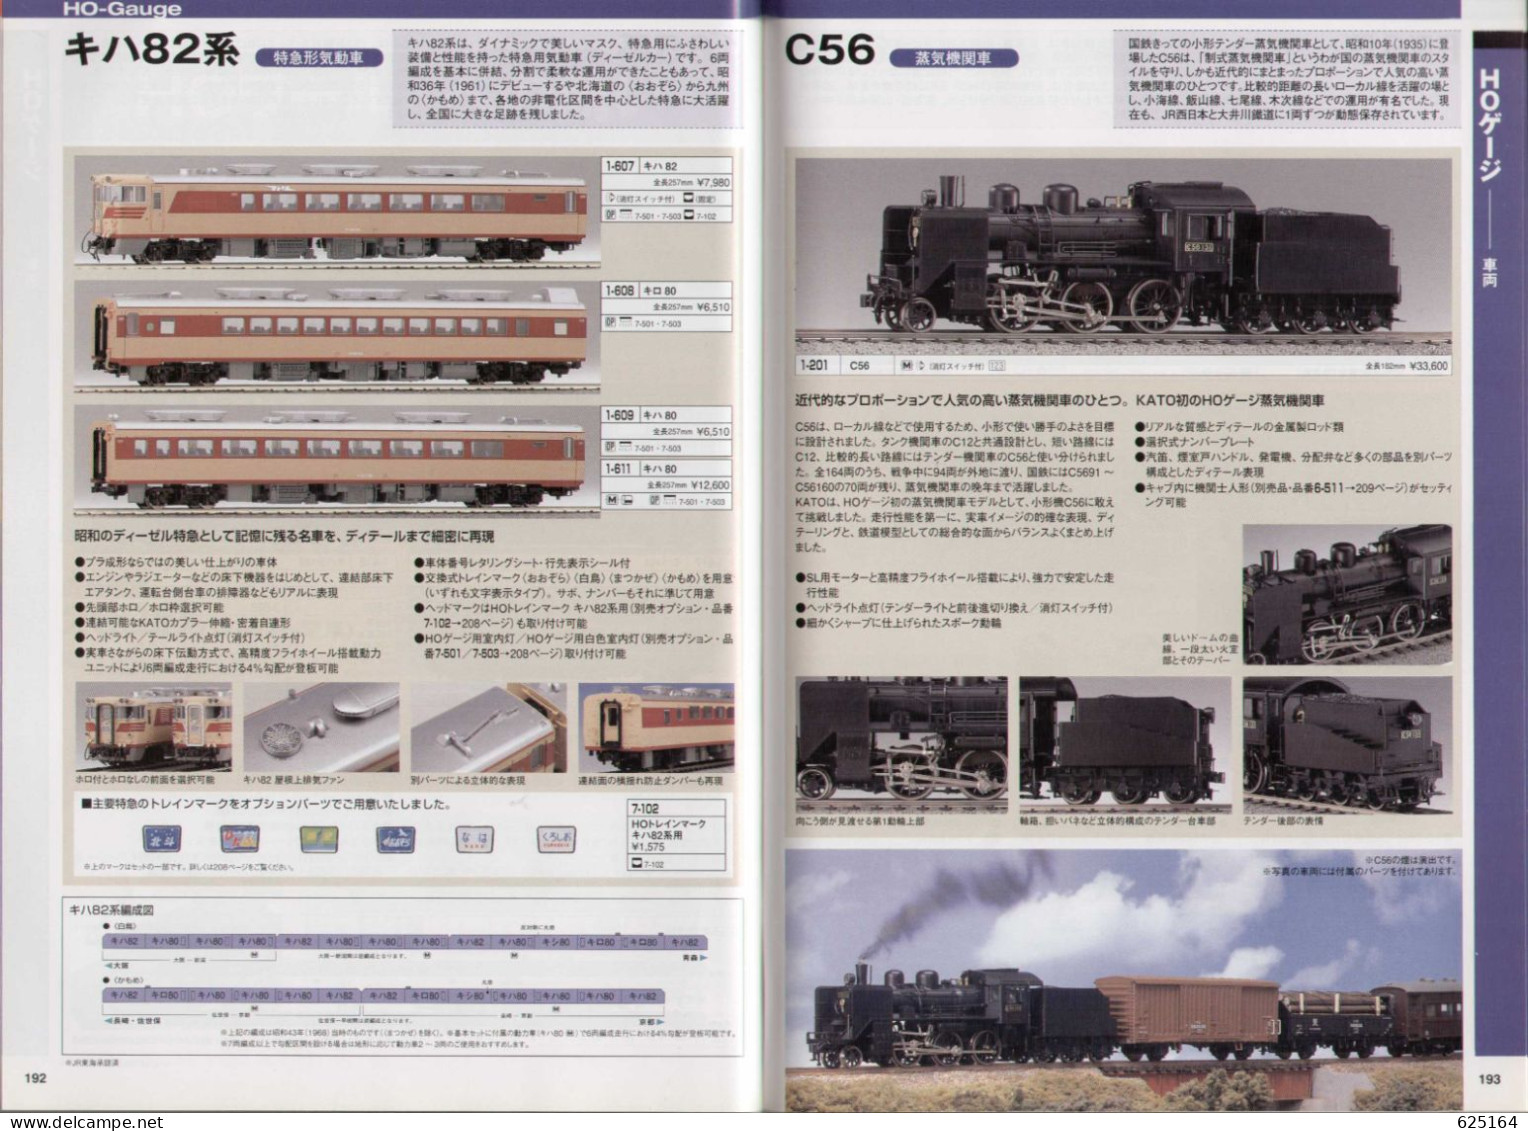 catalogue KATO 2011 PRECISION RAILROAD MODELS - HO 1:87 - N 1:160 - en japonais avec quelques sous-titres anglais